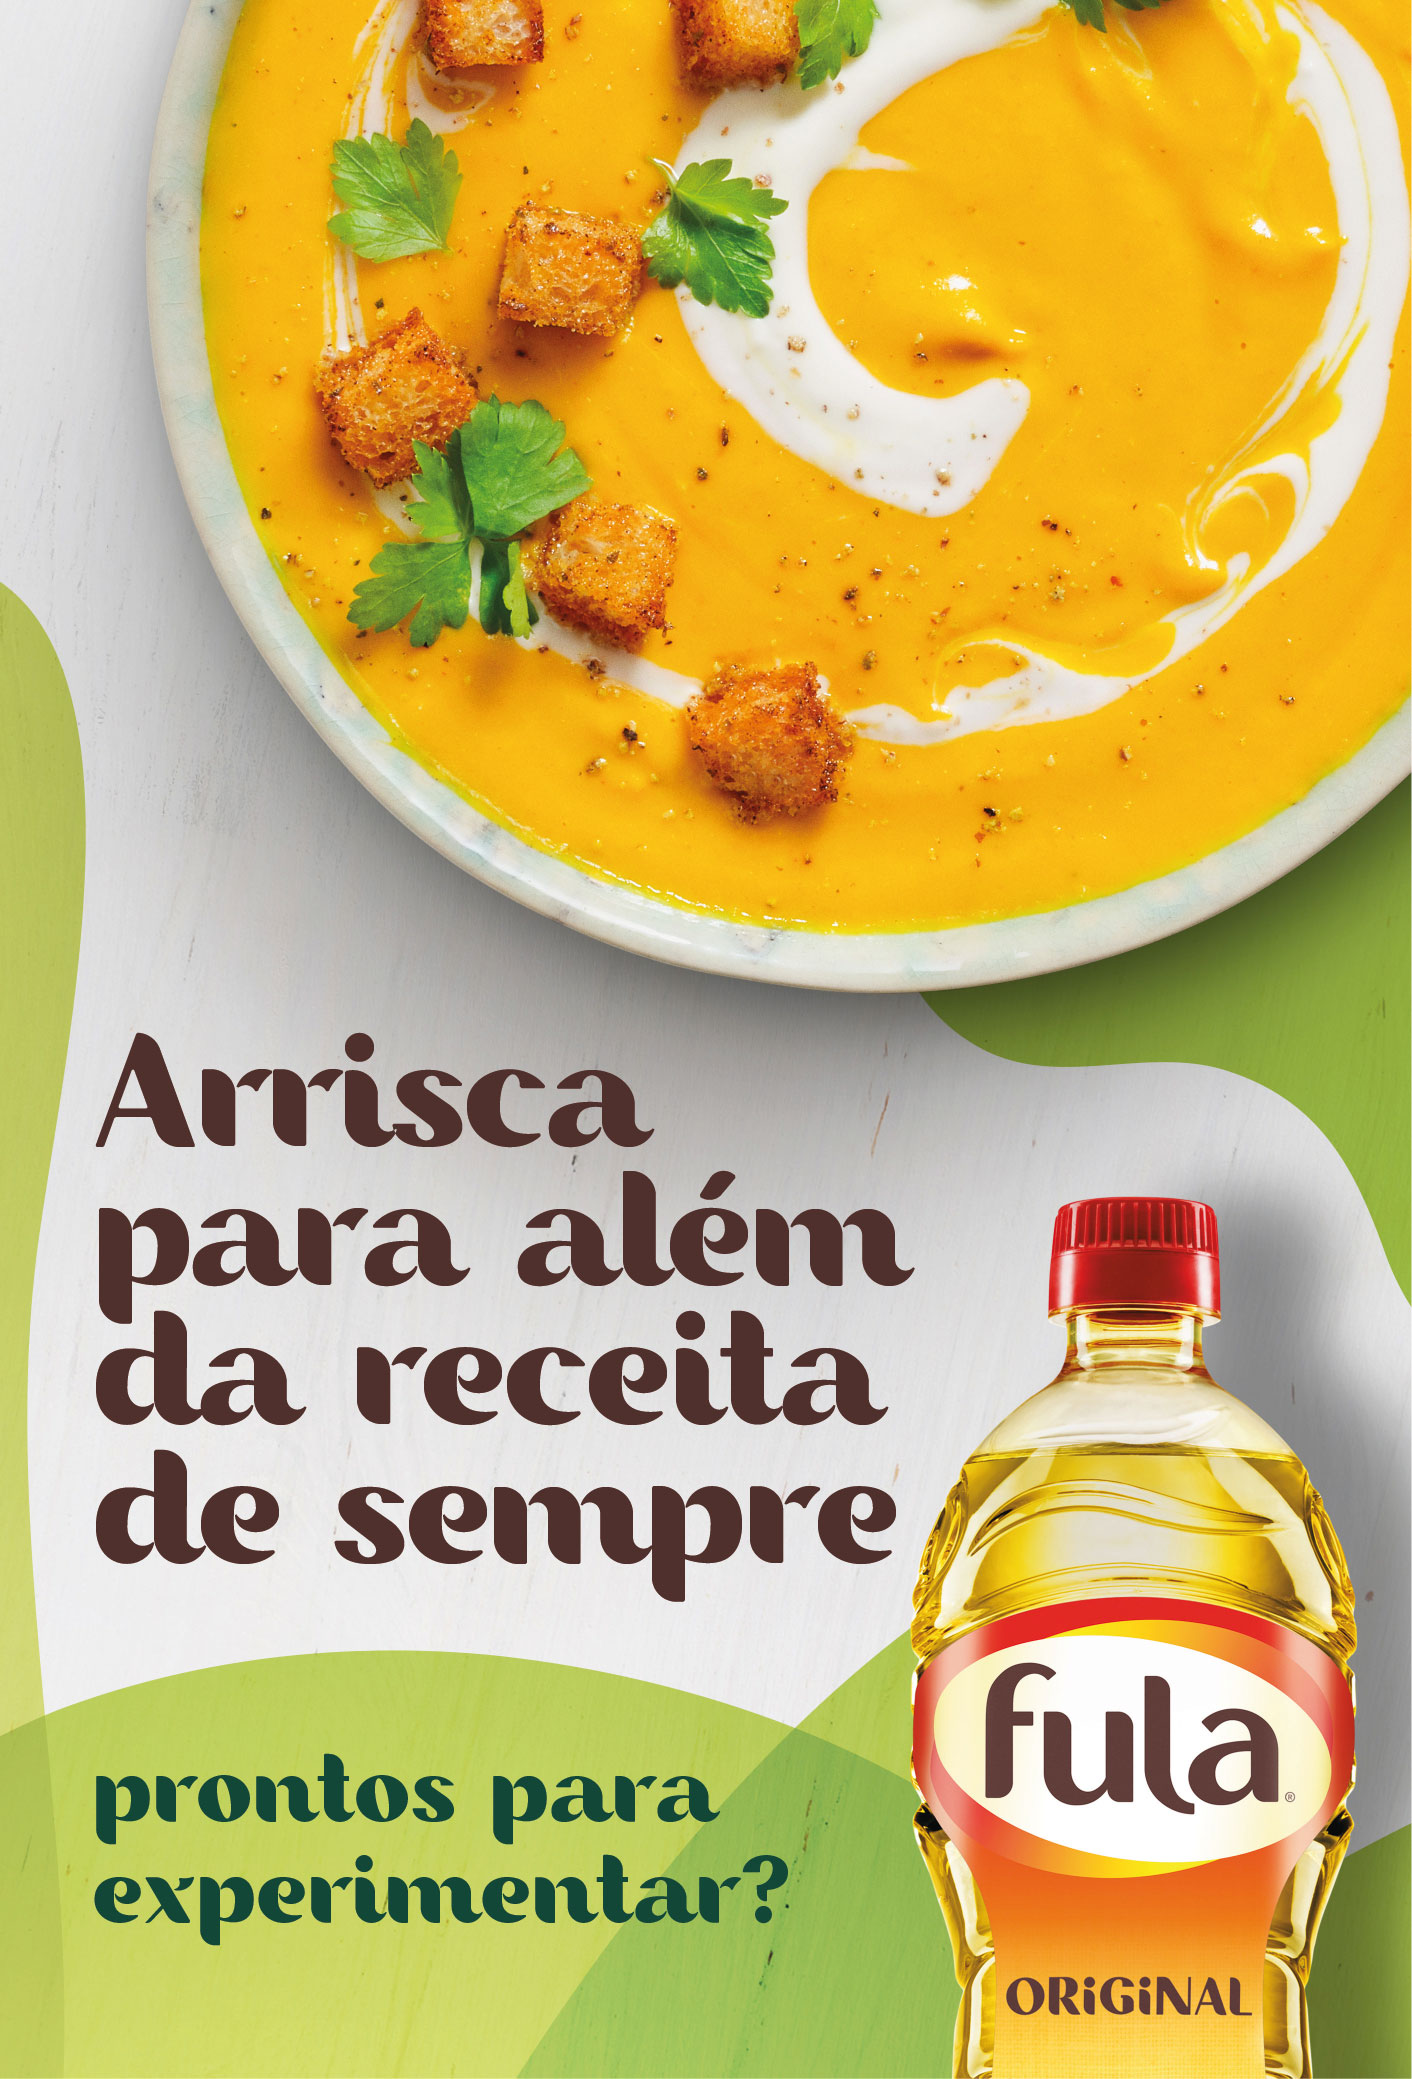 Fula convida os portugueses a arriscarem na cozinha